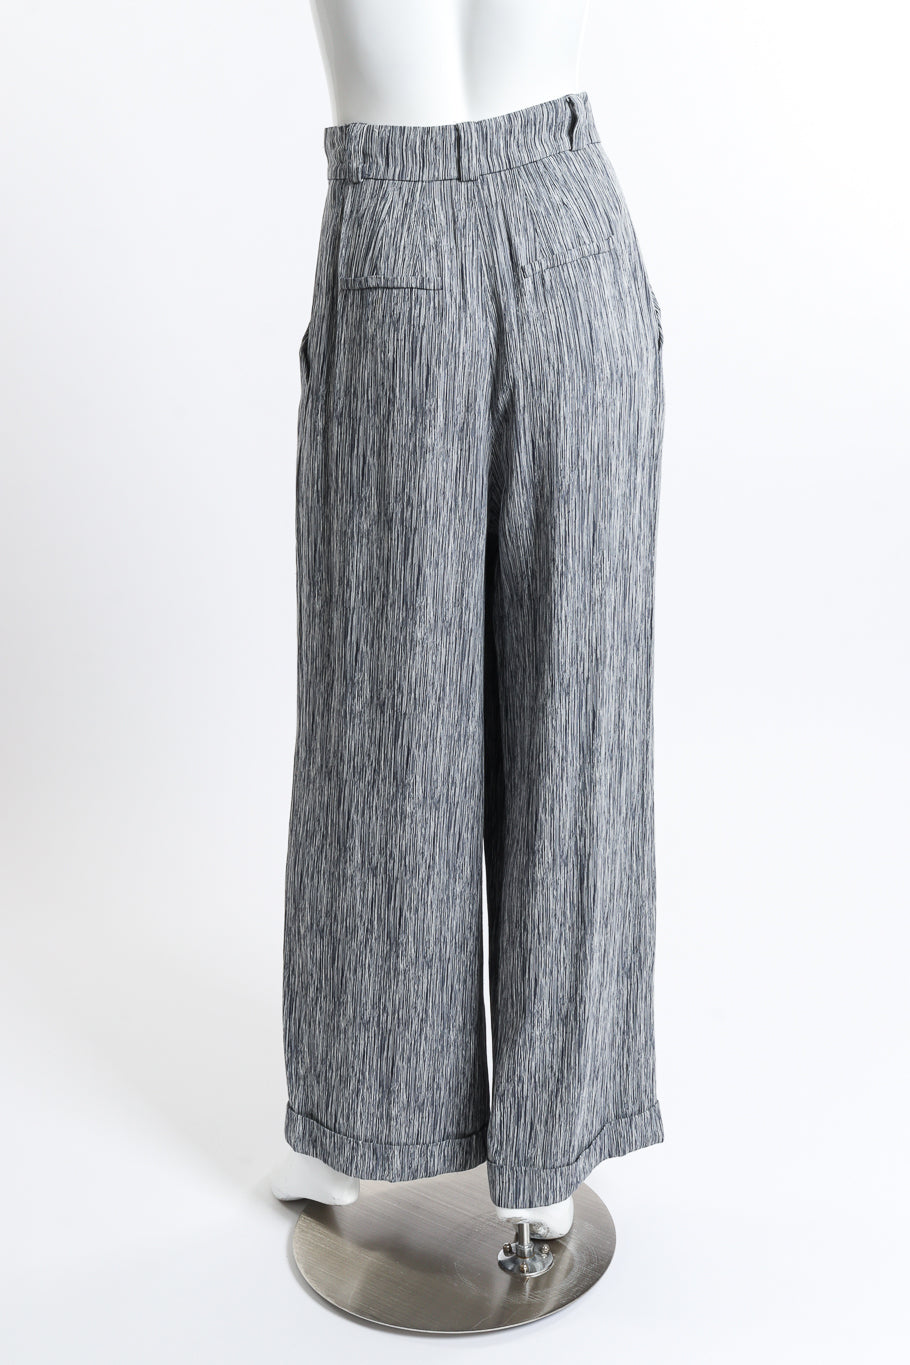 Chloé Woodgrain Stripe Jacket & Pant Set pant back on mannequin @recess la